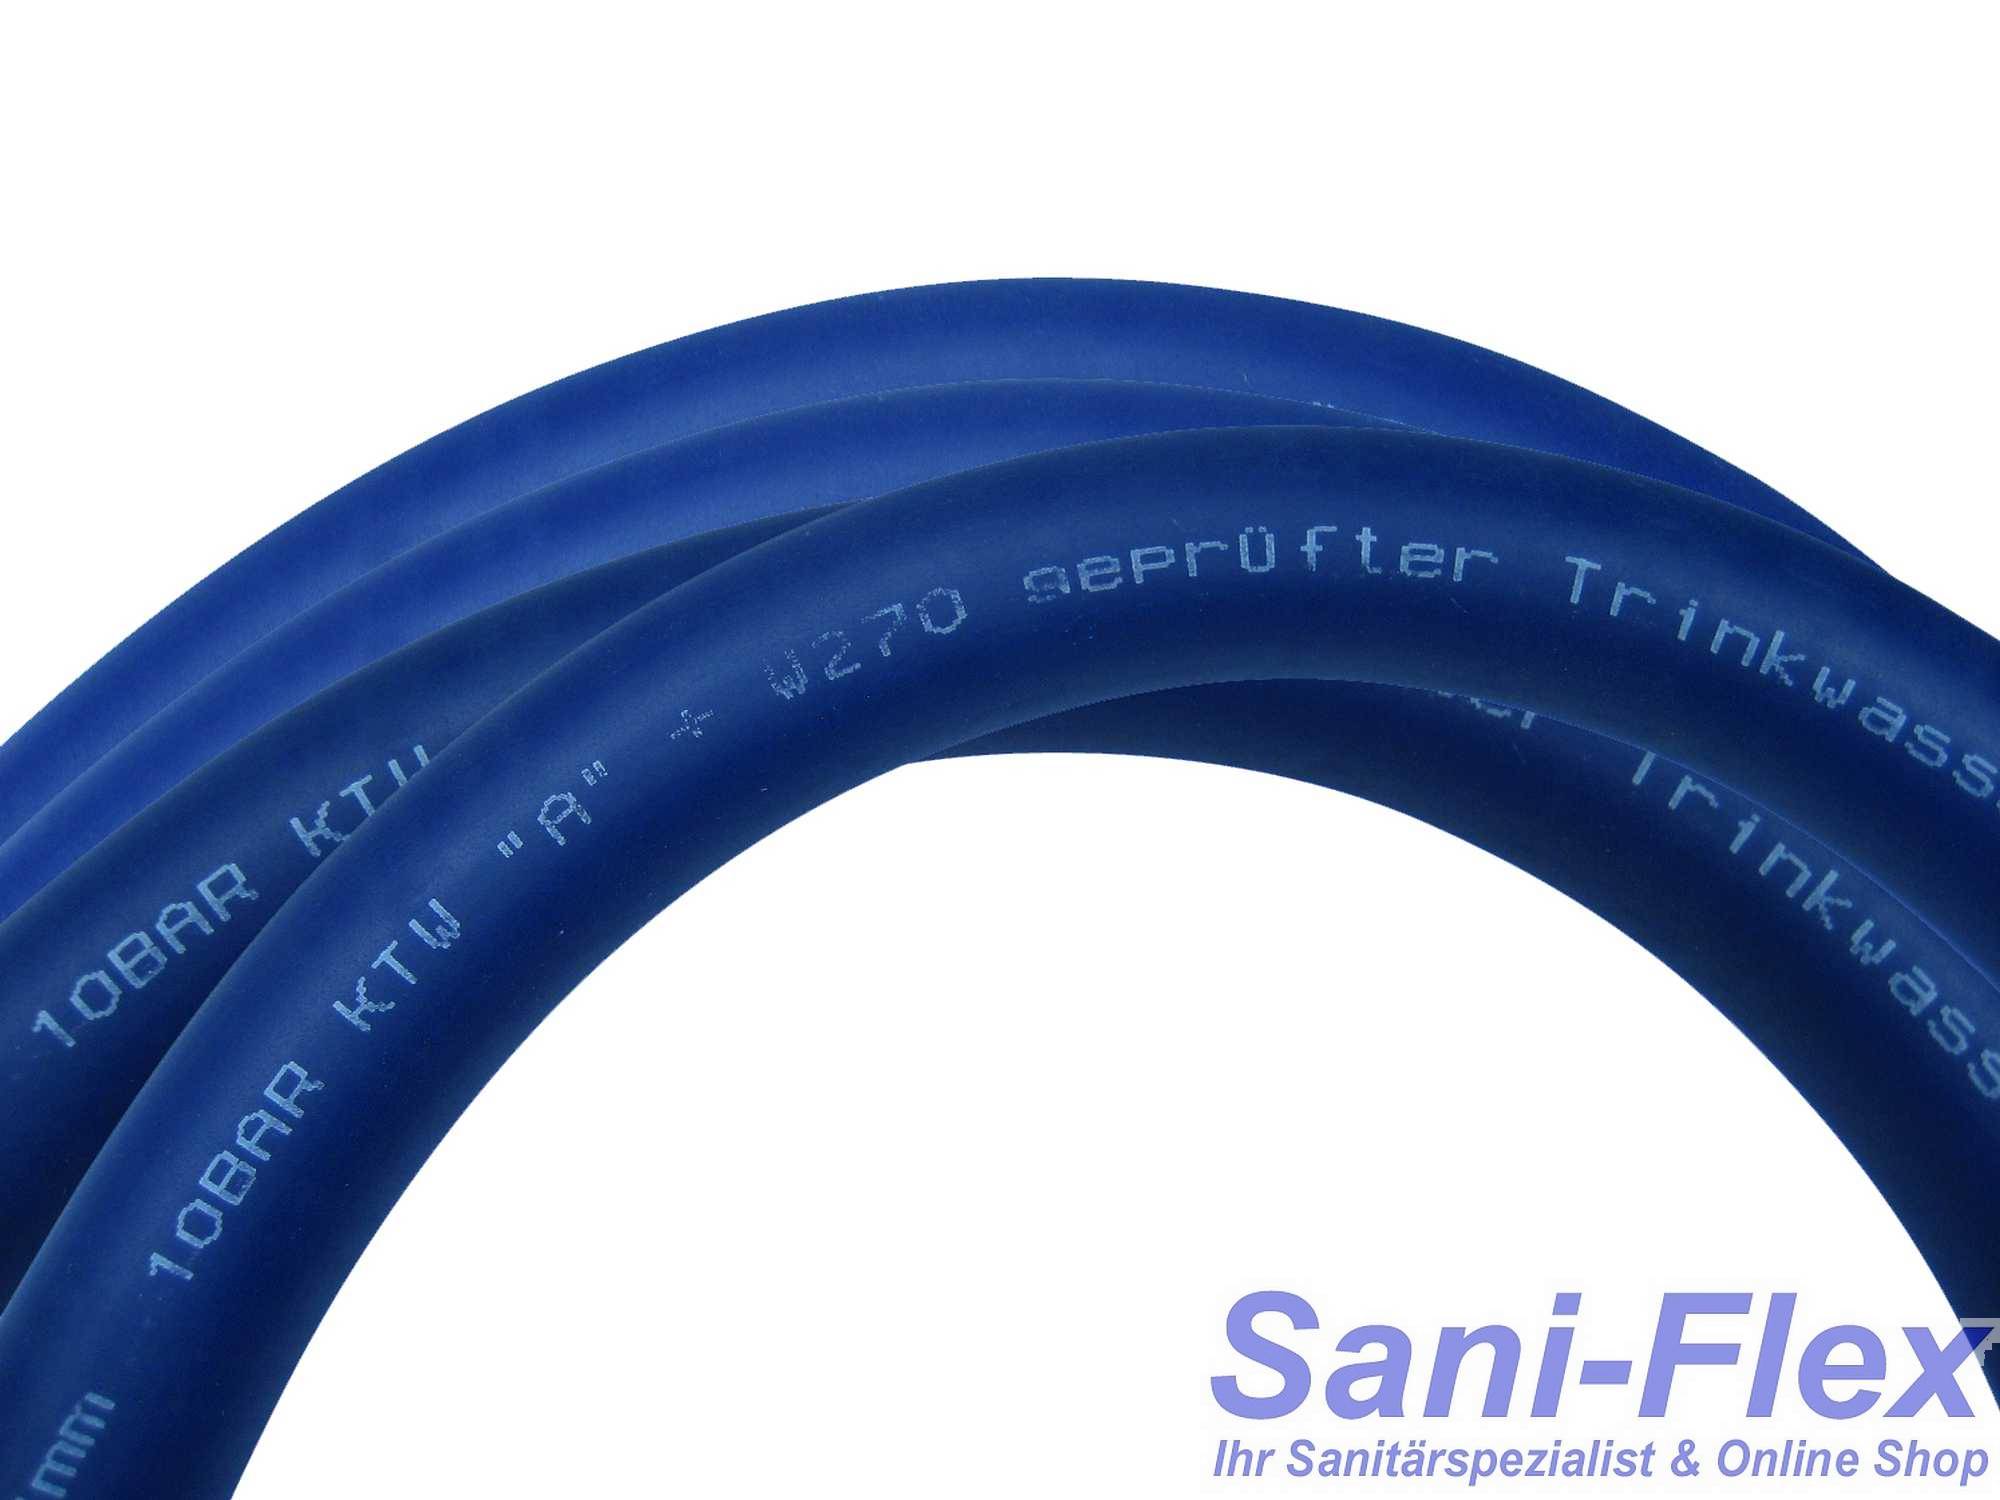 Extra-flexibler Profiline-Aqua Extra Soft 13mm (1/2") als Meterware, 5m - 50m Länge, Trinkwasserschlauch nach KTW-A, W270 